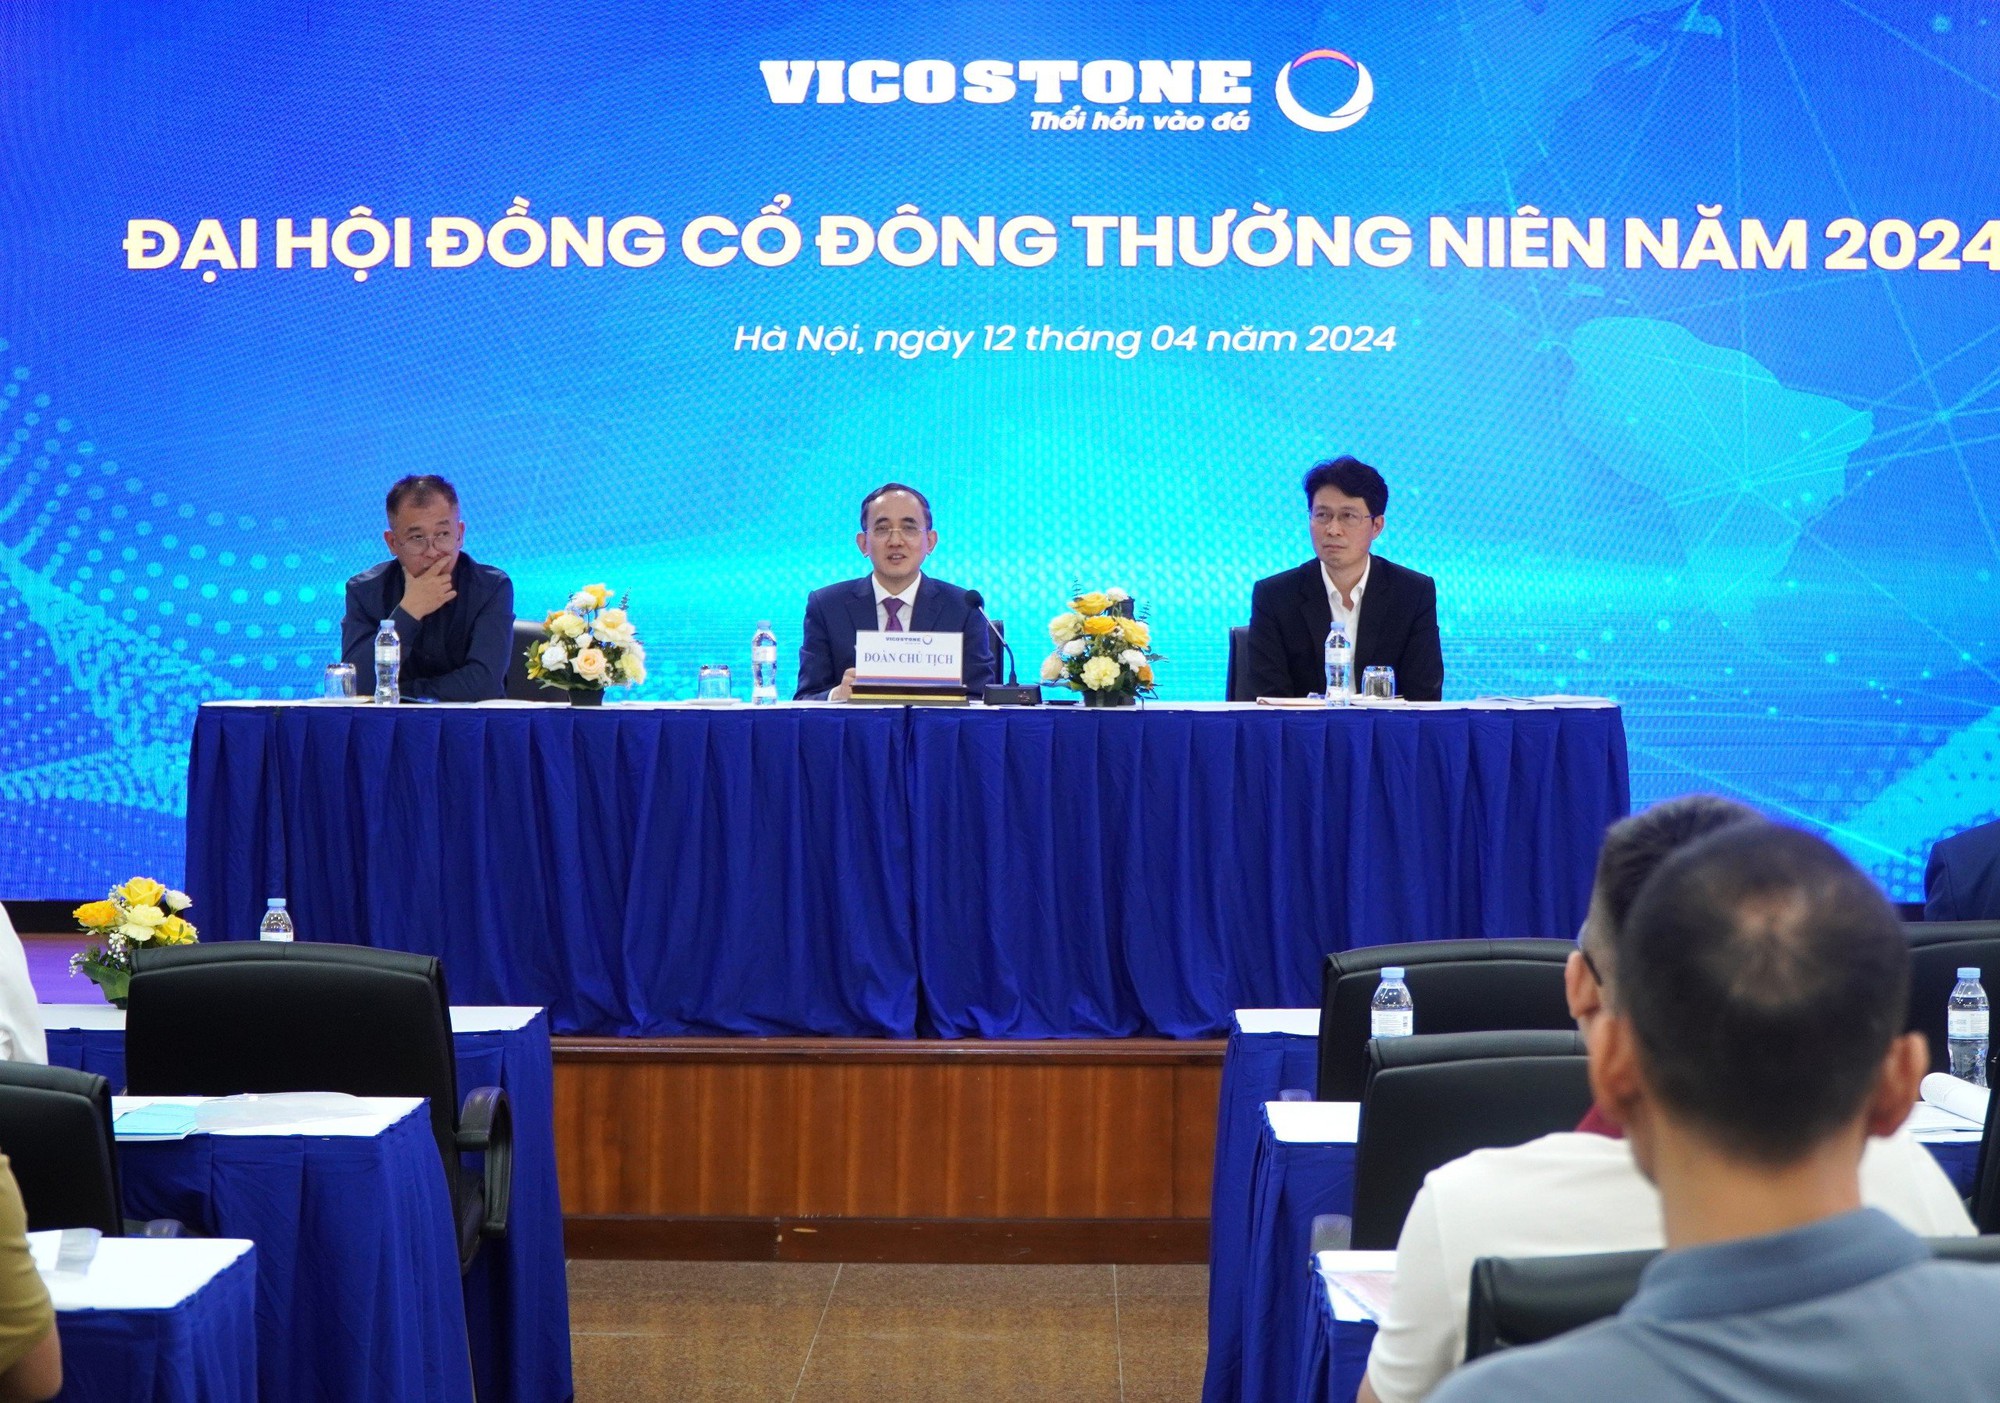 Chủ tịch Hồ Xuân Năng: Vicostone bán giá 100 USD, đối thủ bán 60 USD, có người hùng hồn tuyên bố sẽ làm Vicostone gục ngã- Ảnh 1.